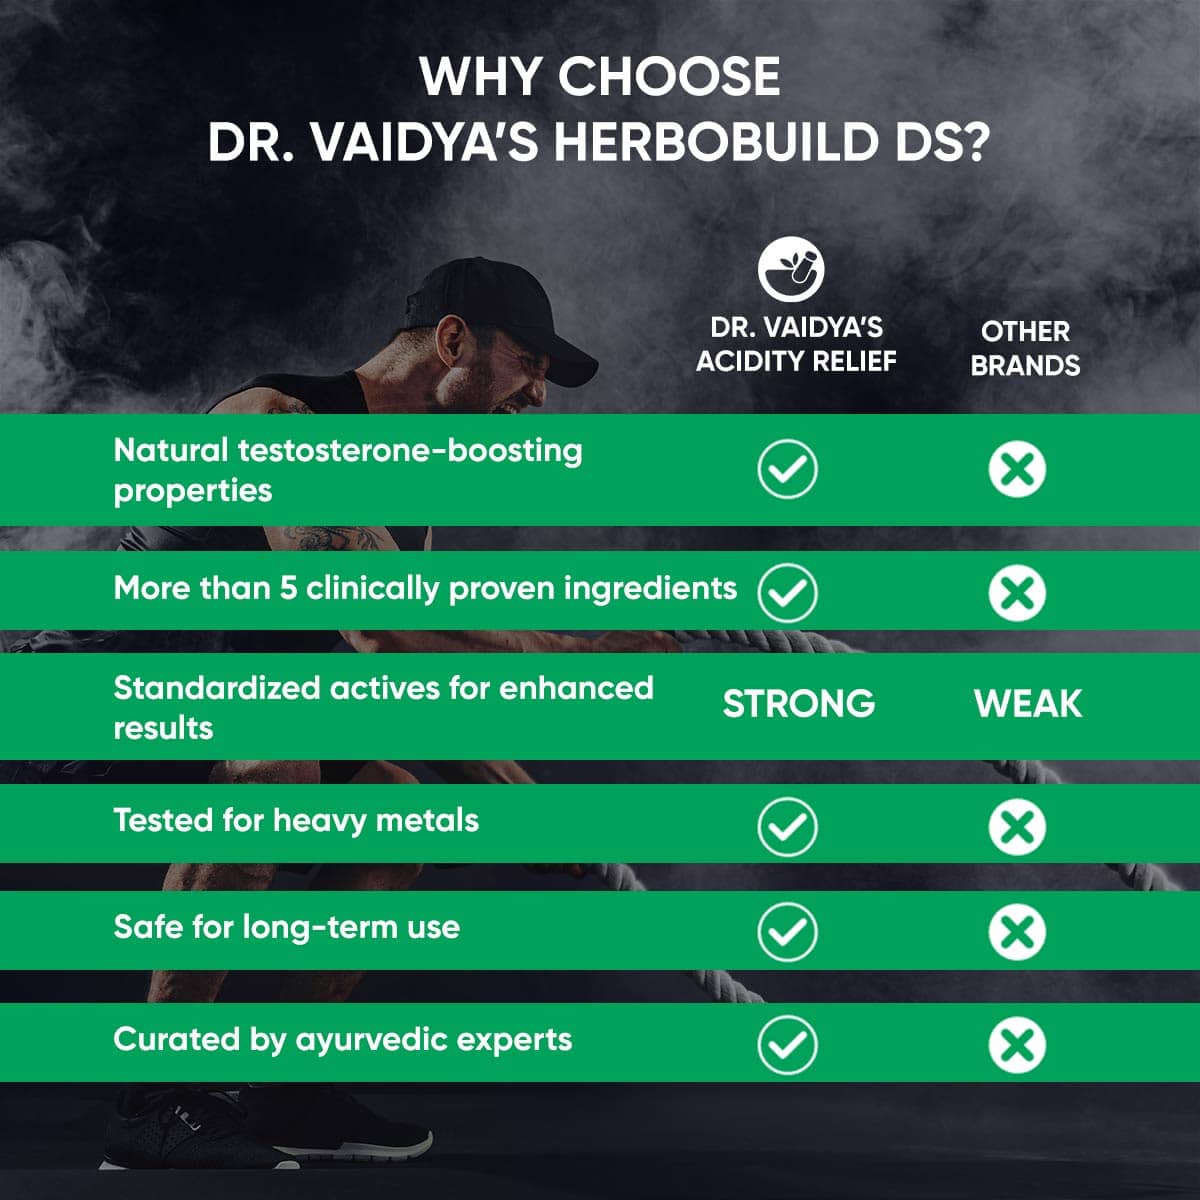 Dr. Vaidya's Herbobuild DS (Double Strength)